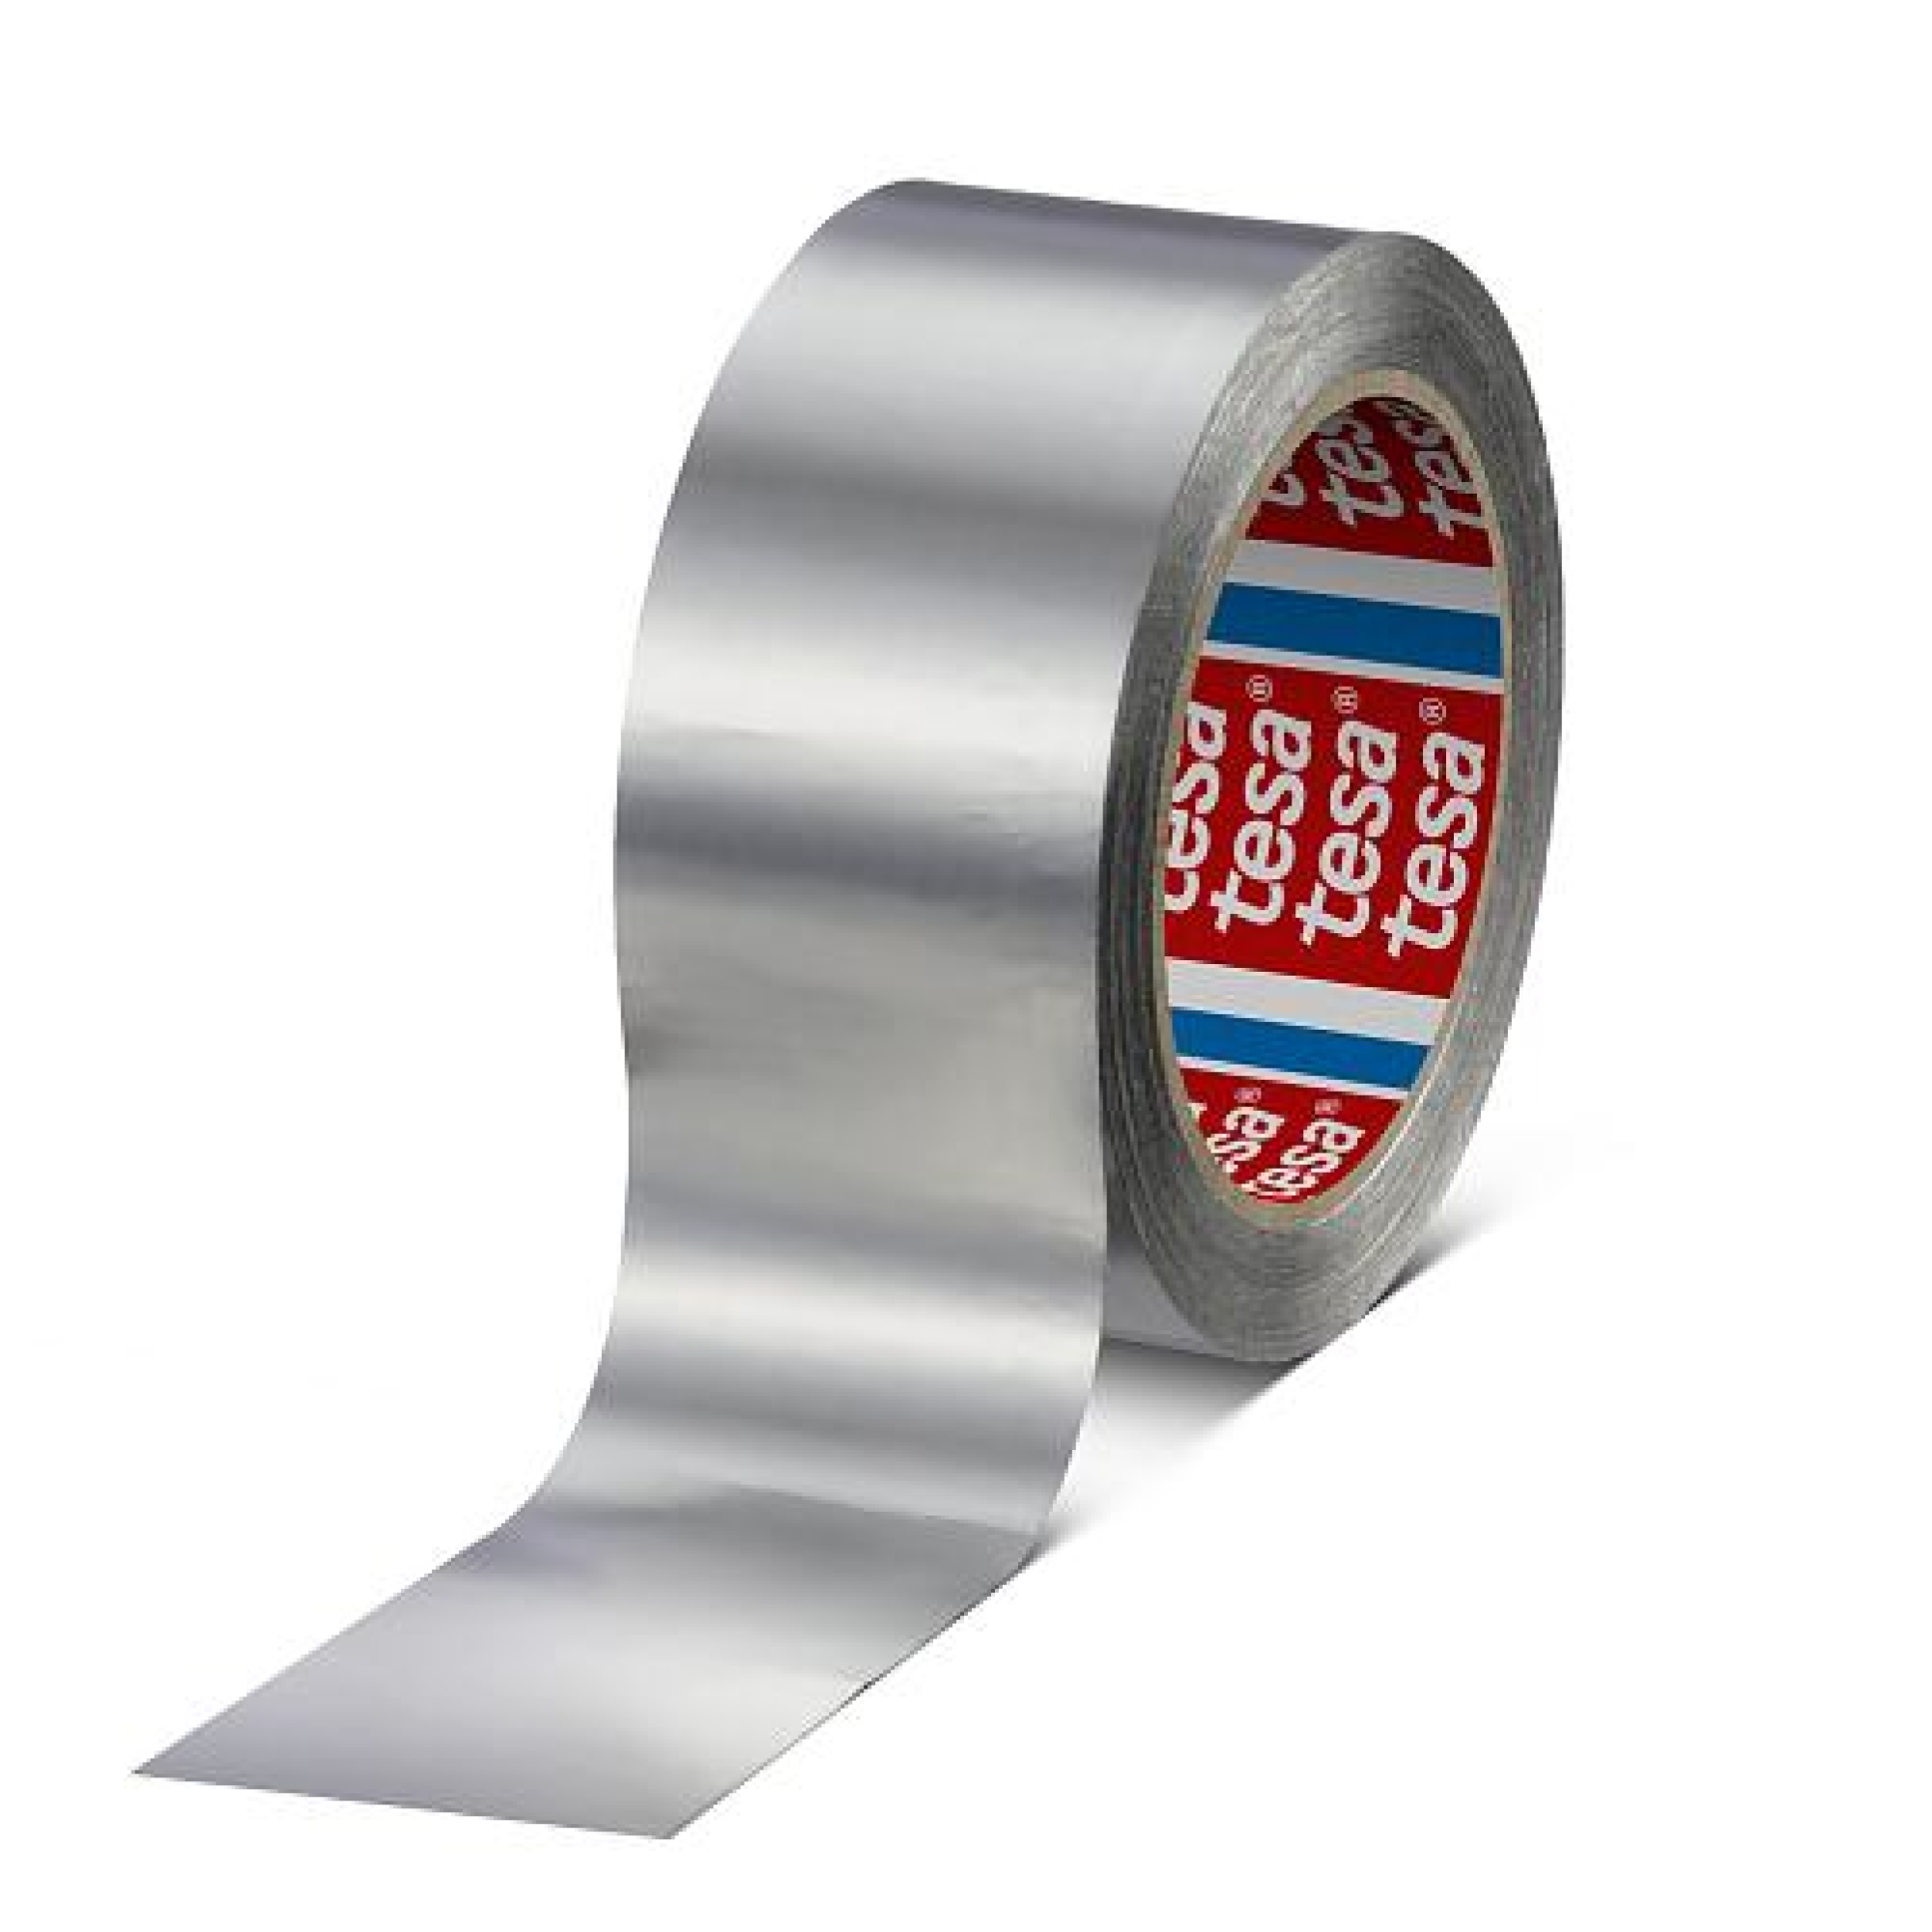 Gerlinger Aluminium-Klebeband Gerband 712 Rolle 38 mm breit 50m 0,11mm Dicke 